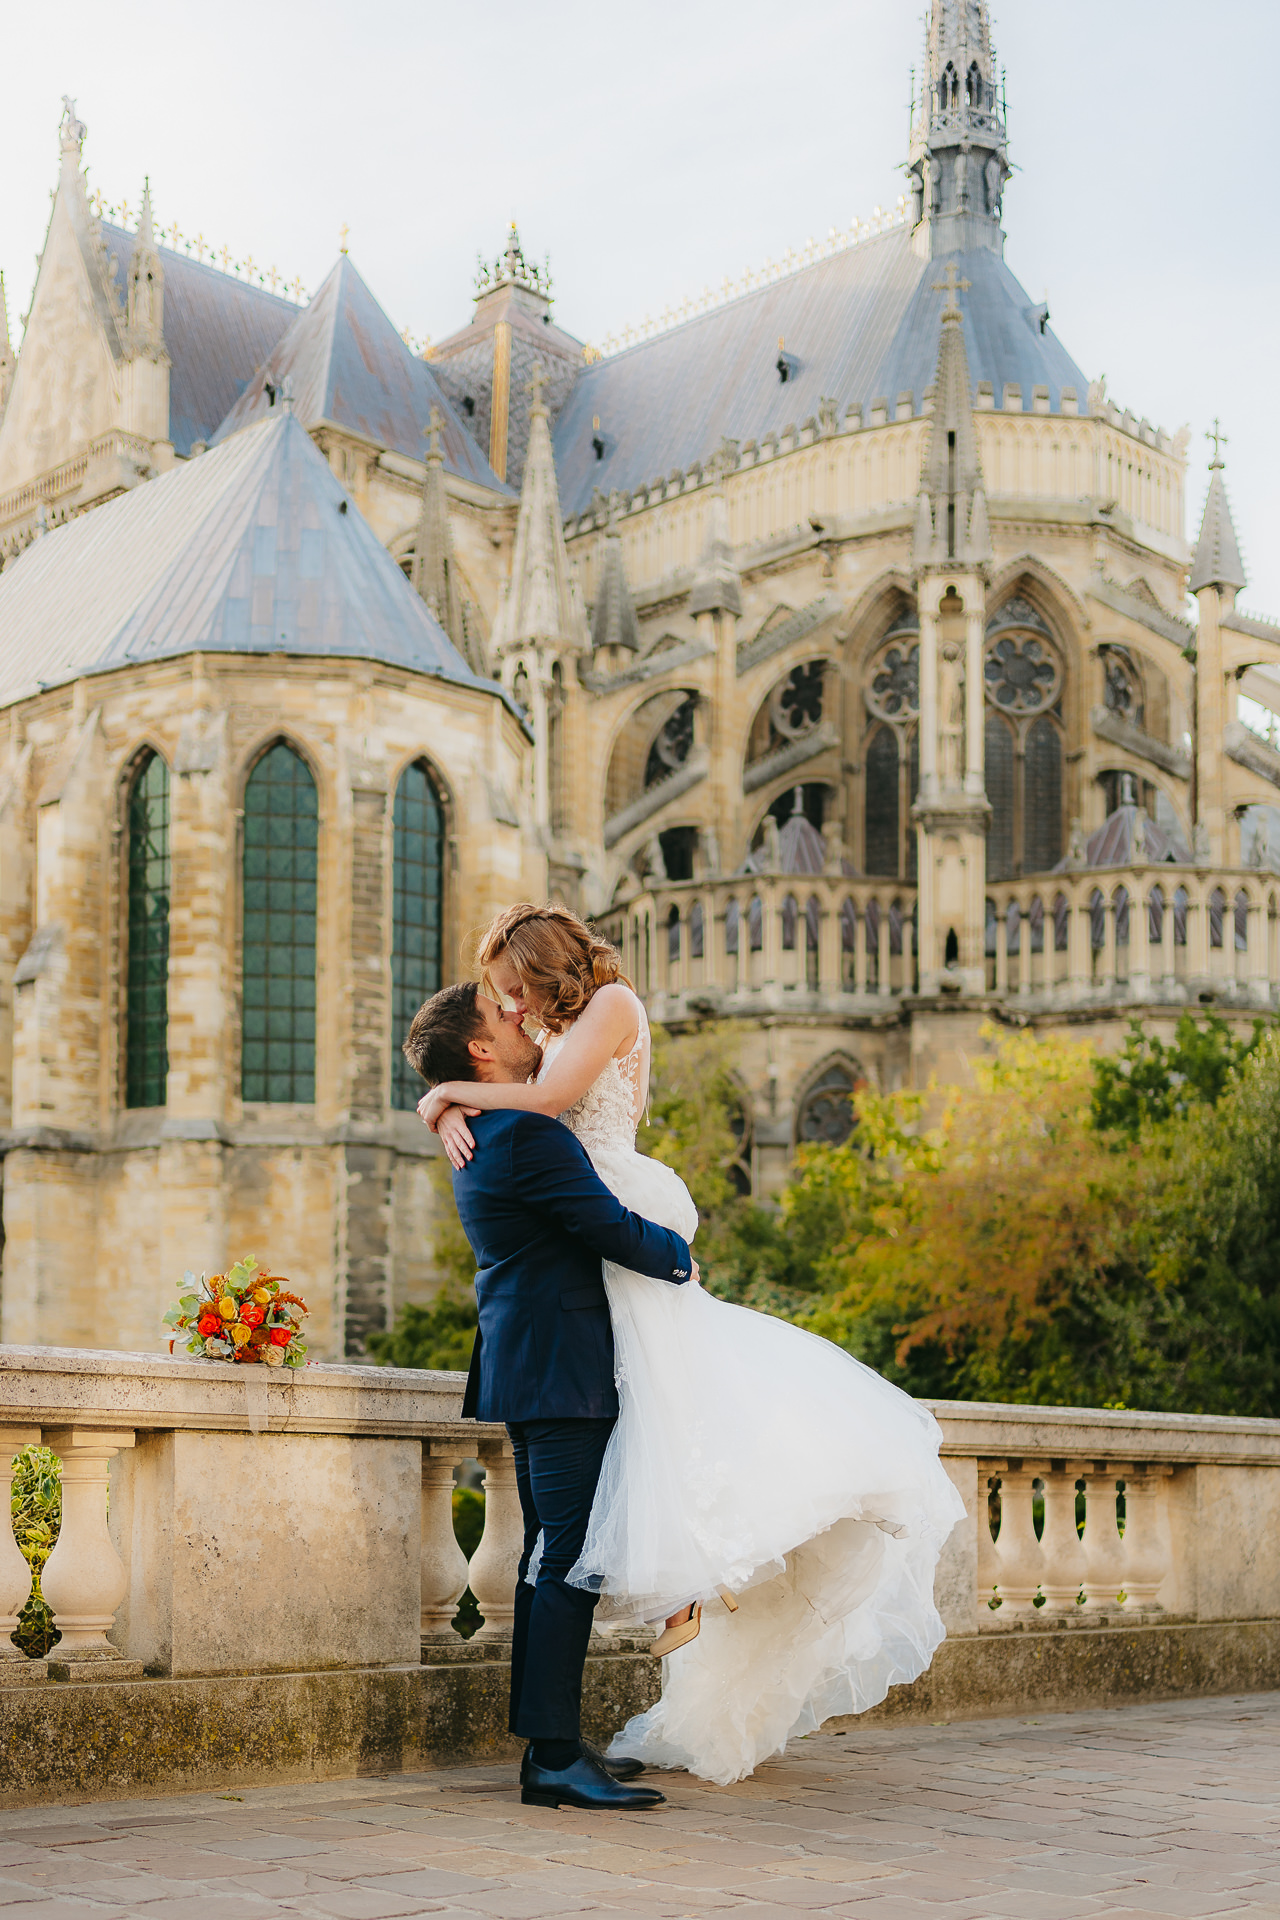 Les jeunes mariés s’embrassent devant une cathédrale historique.